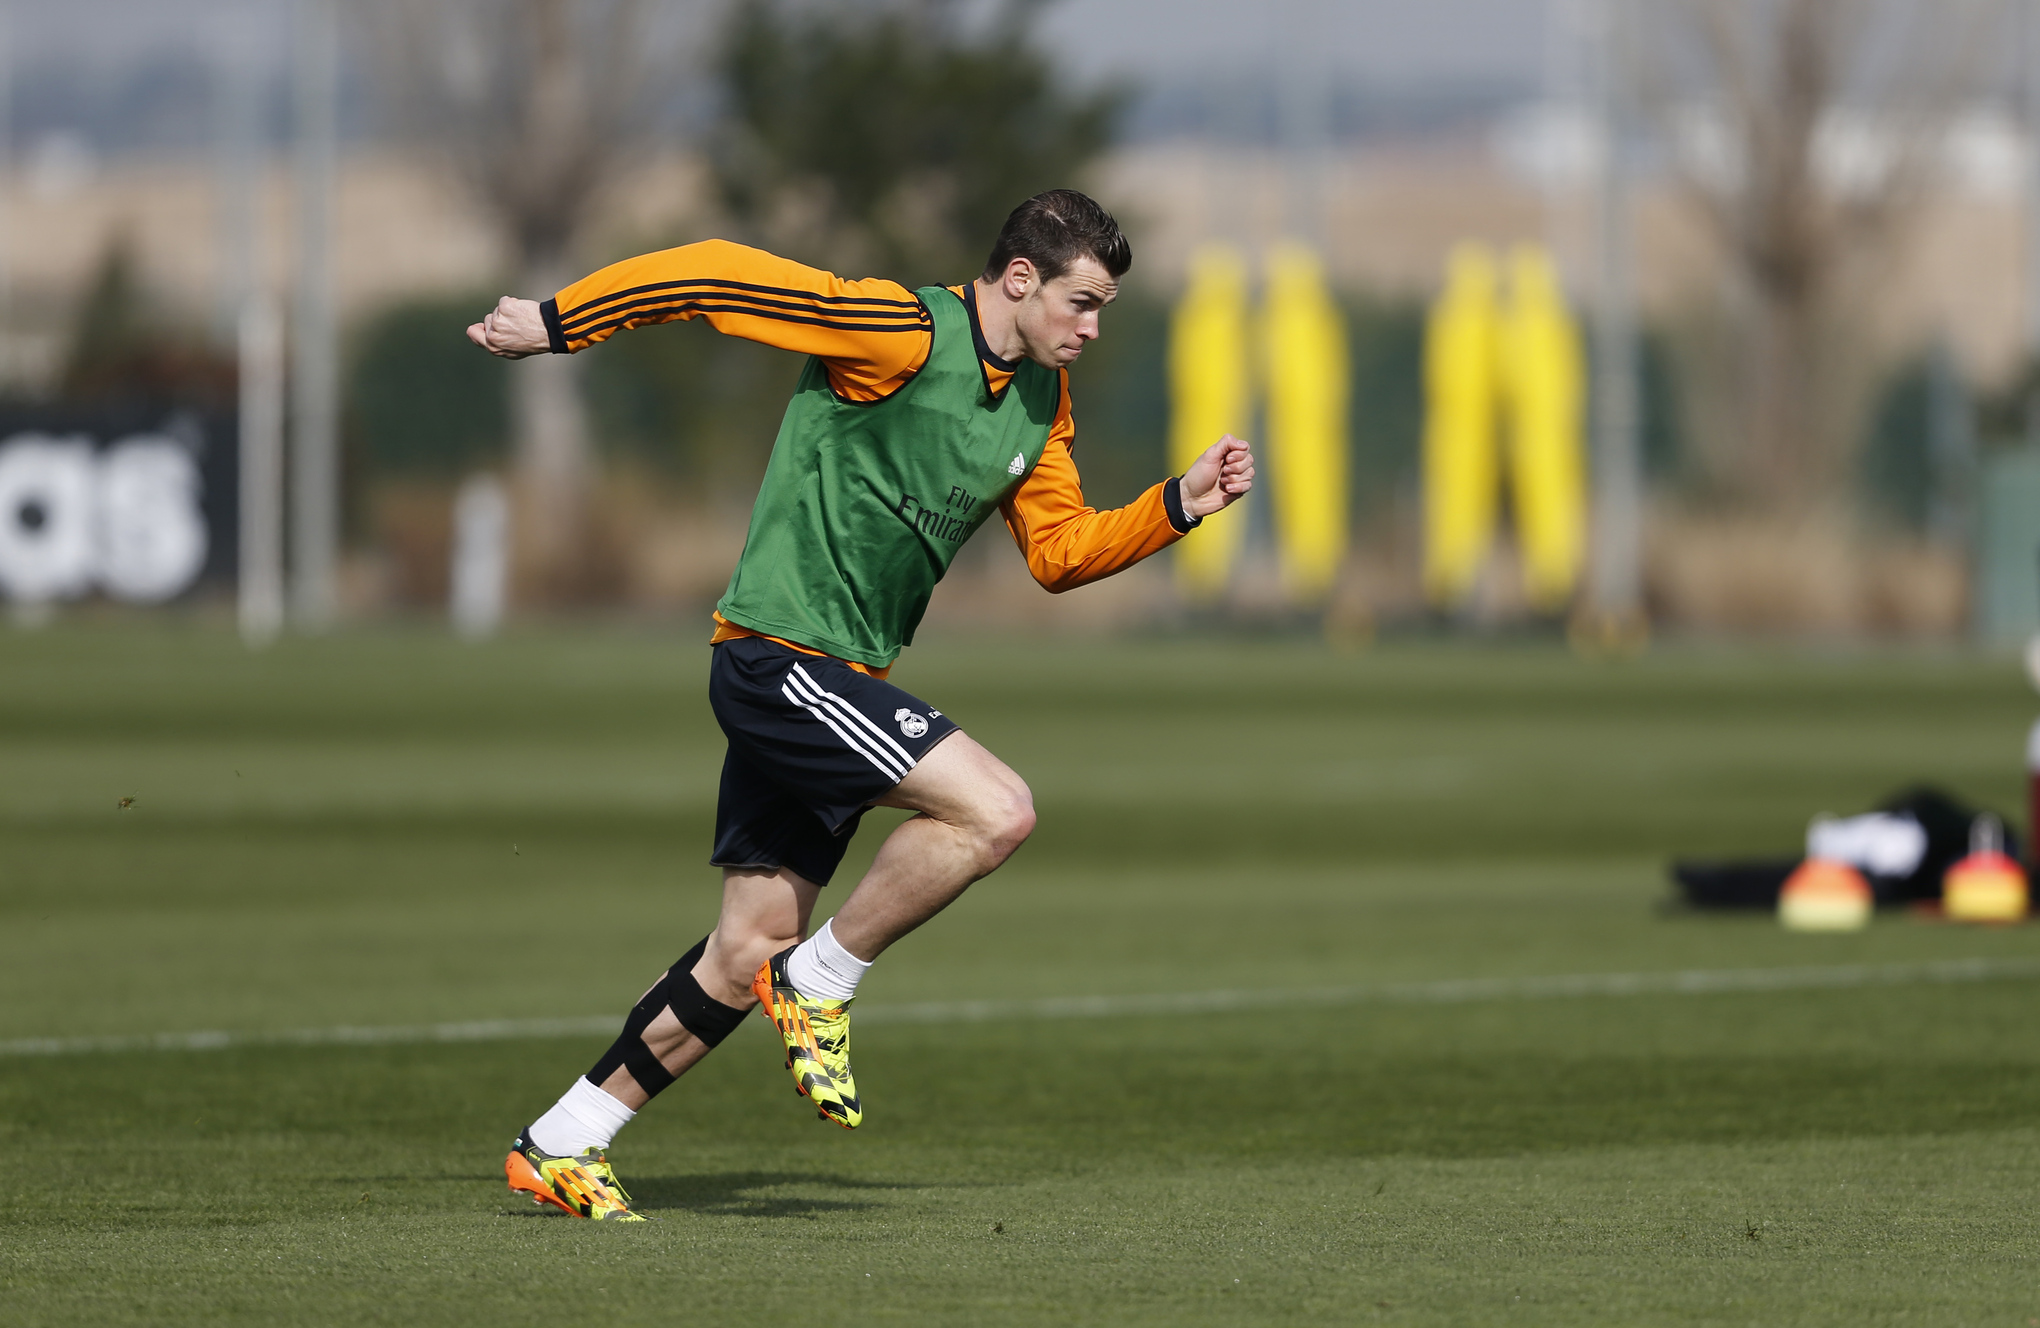  Tập luyện chăm chỉ, thi đấu bùng nổ, nhưng Bale vẫn chưa thể khiến các fan Real vừa lòng.